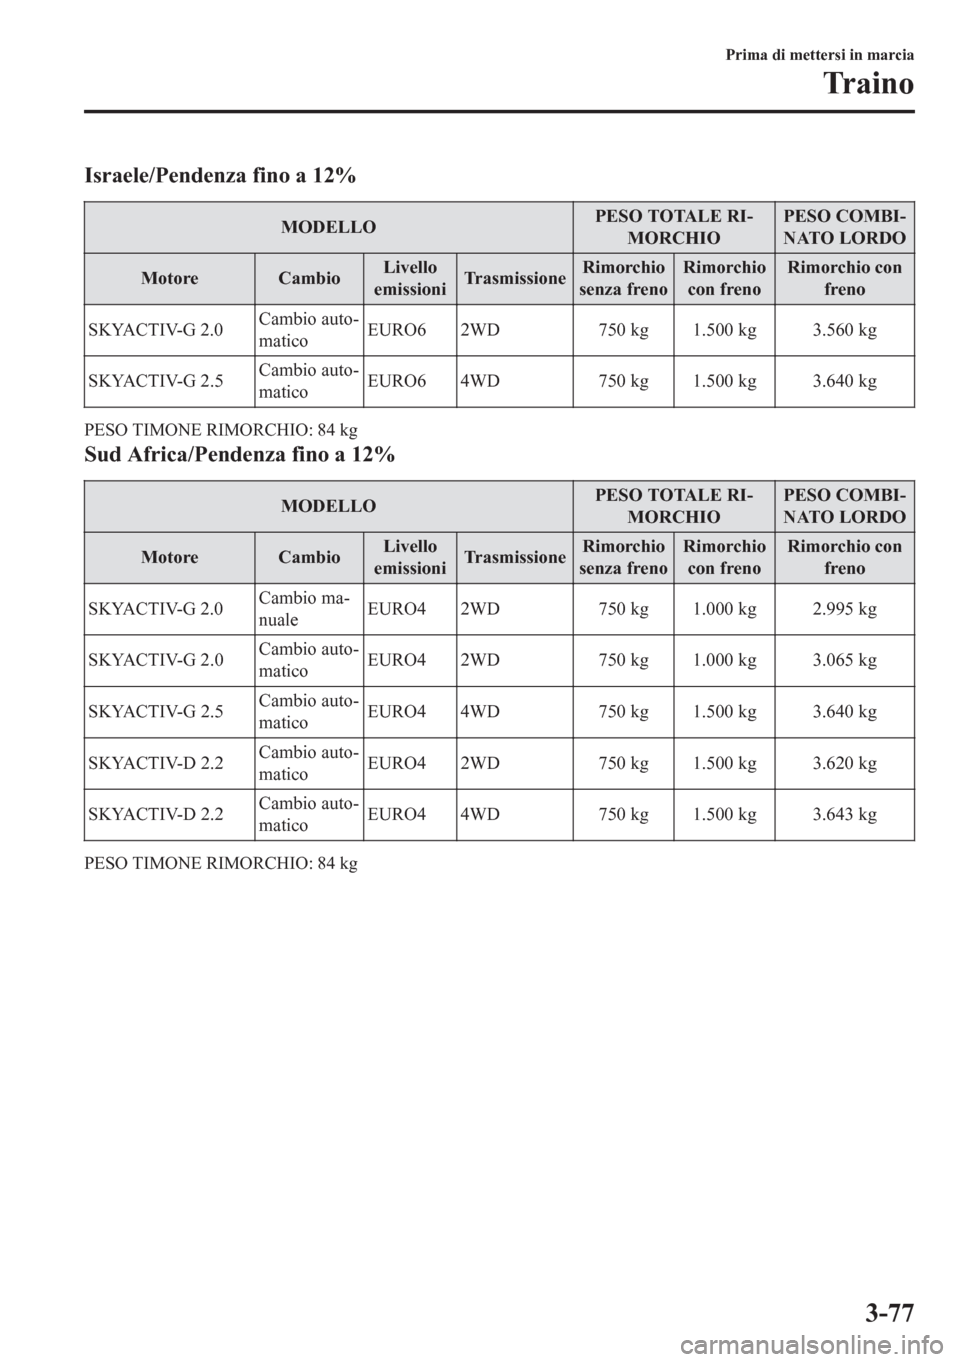 MAZDA MODEL CX-5 2018  Manuale del proprietario (in Italian) Israele/Pendenza fino a 12%
MODELLOPESO TOTALE RI-
MORCHIOPESO COMBI-
NATO LORDO
Motore CambioLivello
emissioniTrasmissioneRimorchio
senza frenoRimorchio
con frenoRimorchio con
freno
SKYACTIV-G 2.0Cam